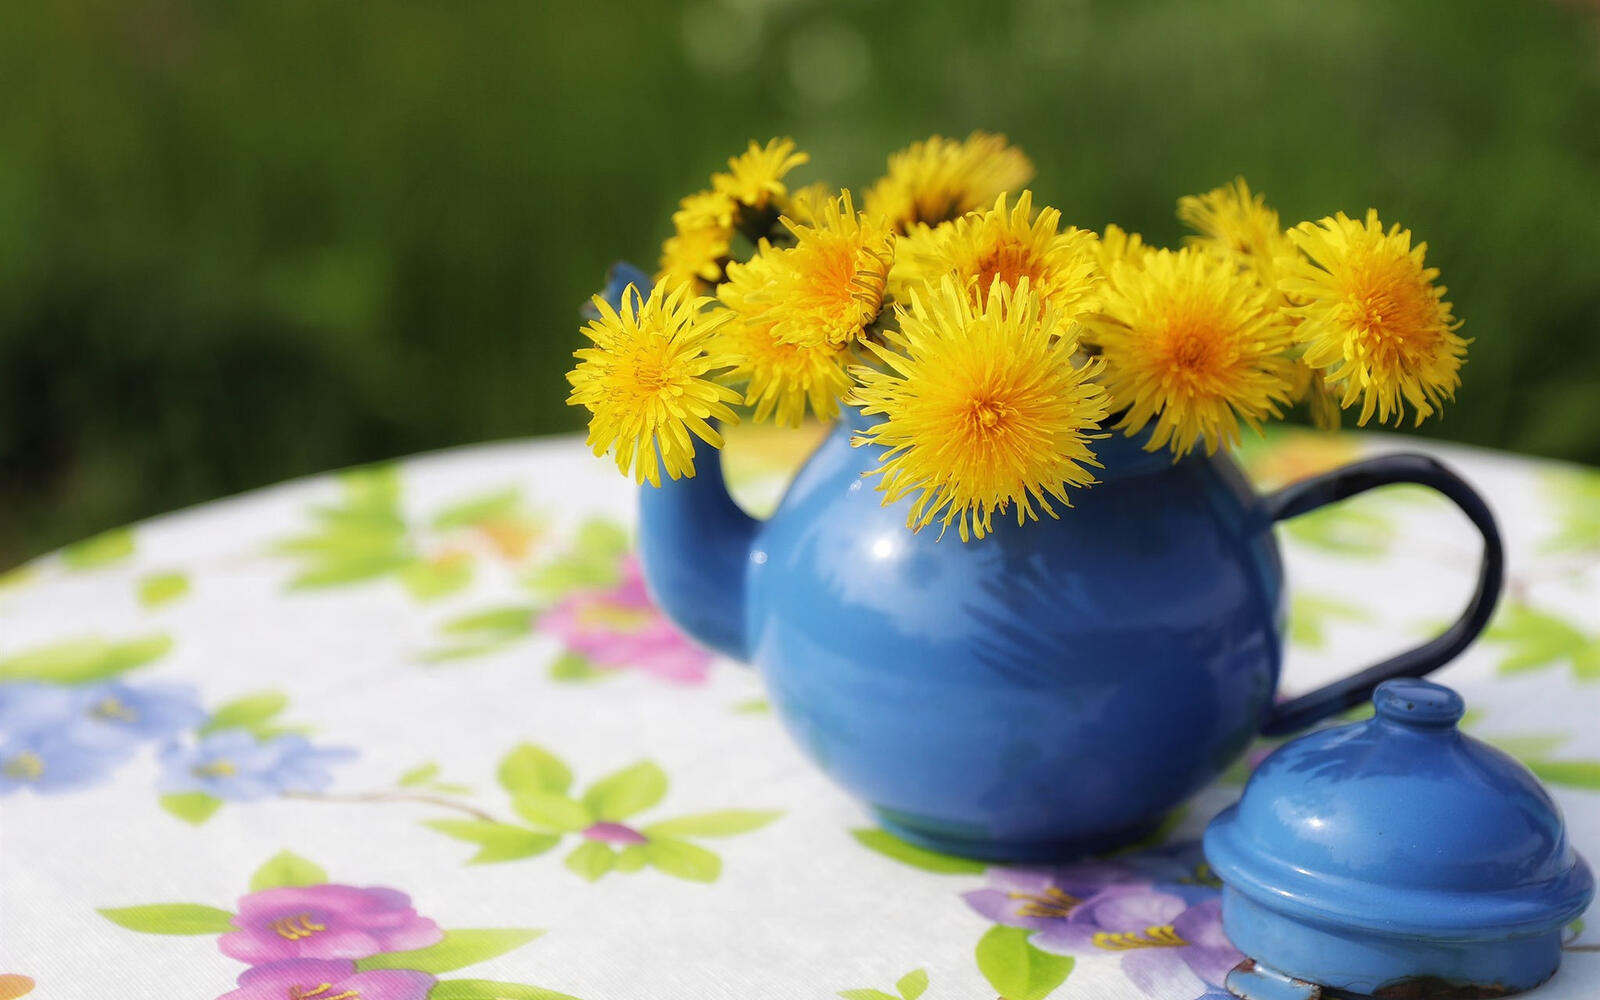 Бесплатное фото Синий чайник с желтыми одуванчиками